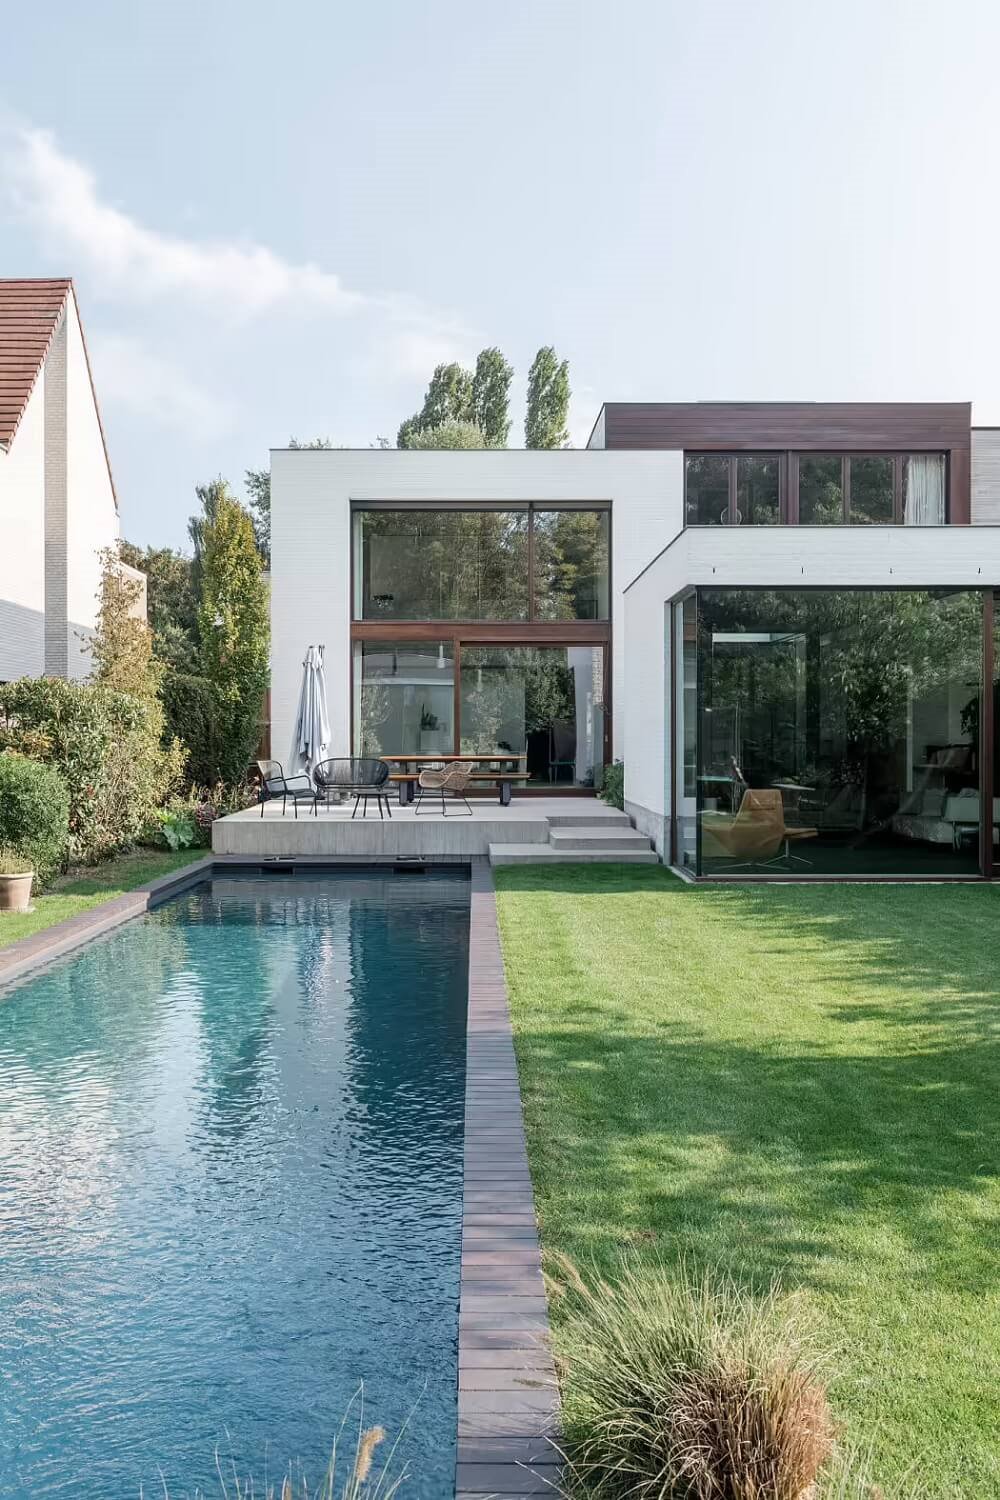 Casa moderna Bélgica fachada piscina